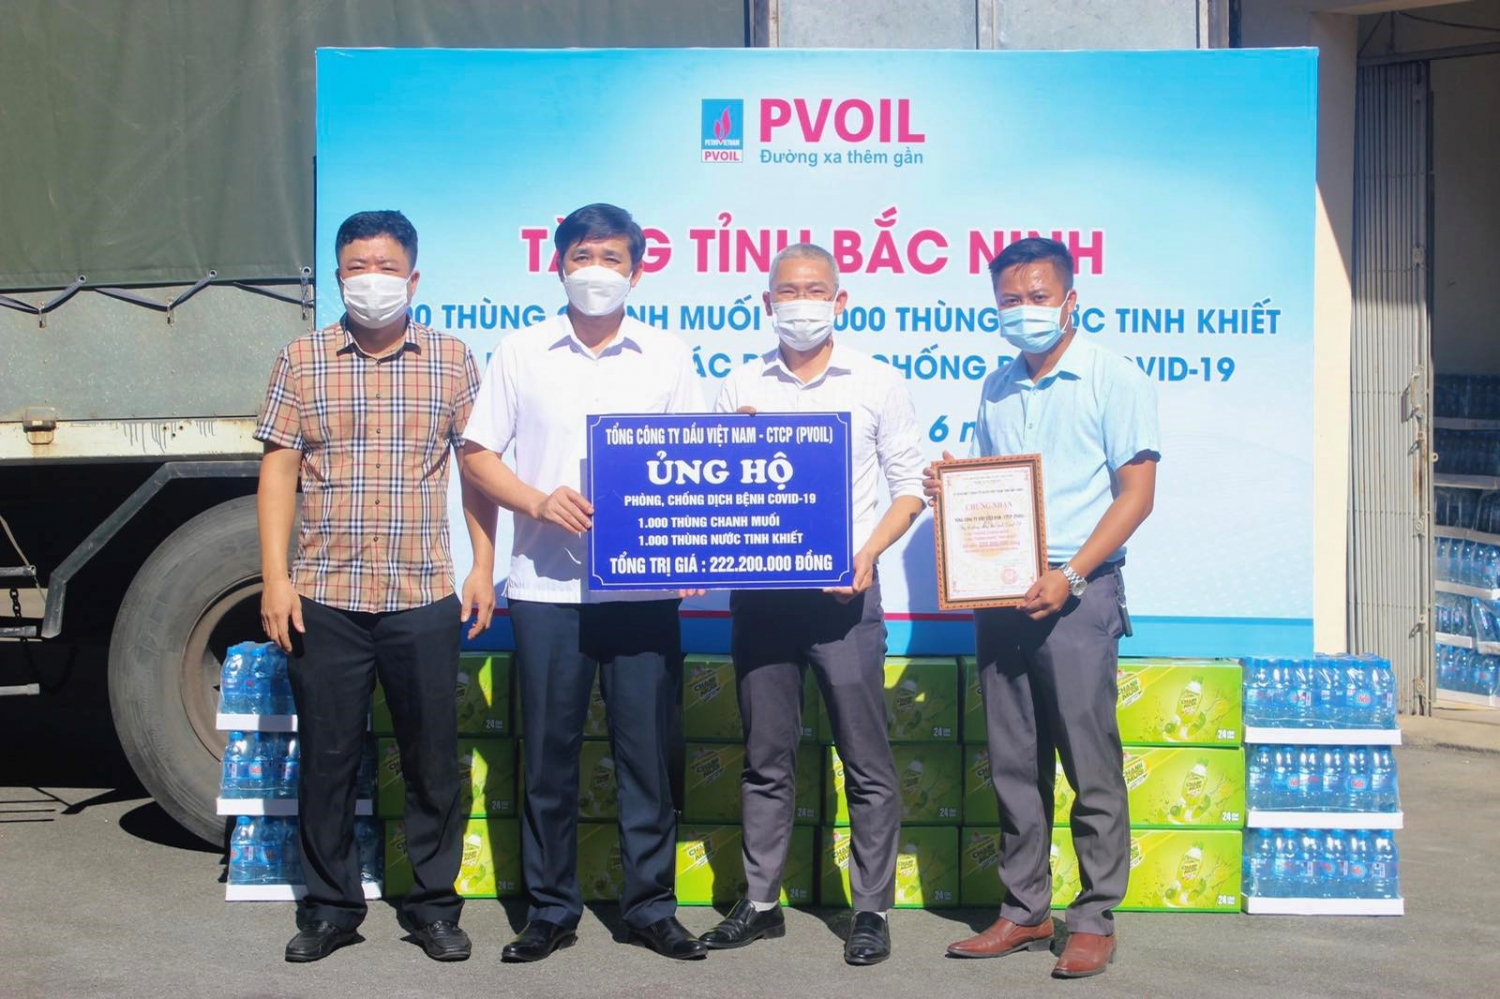 Ông Nguyễn Đình Lợi - Ủy viên BTV Tỉnh ủy, Chủ tịch UBMTTQ Việt Nam tỉnh Bắc Ninh tiếp nhận 2.000 thùng nước từ PVOIL